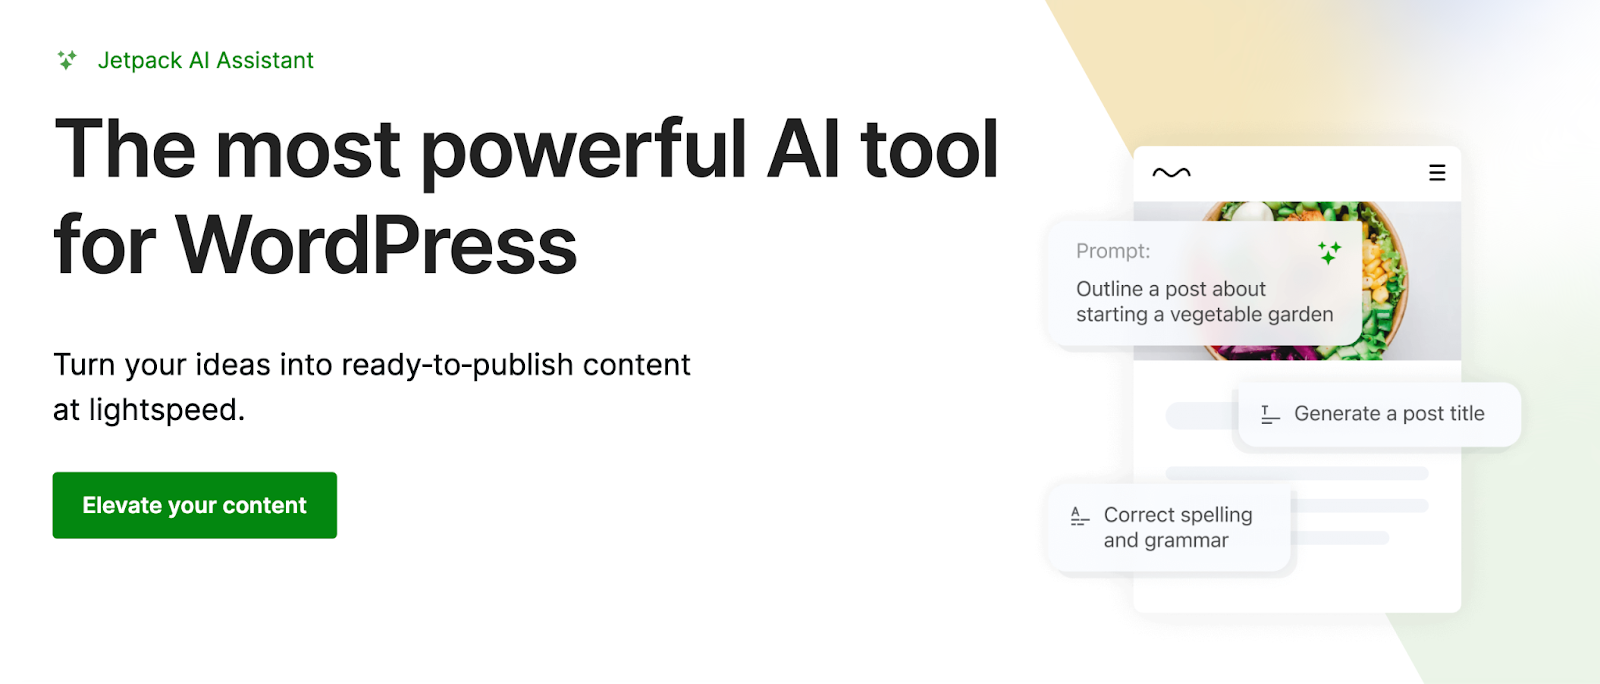 O assistente Jetpack AI permite que você passe de uma ideia a conteúdo de alta qualidade em minutos, tornando-o um dos plug-ins de IA mais poderosos e úteis para WordPress.